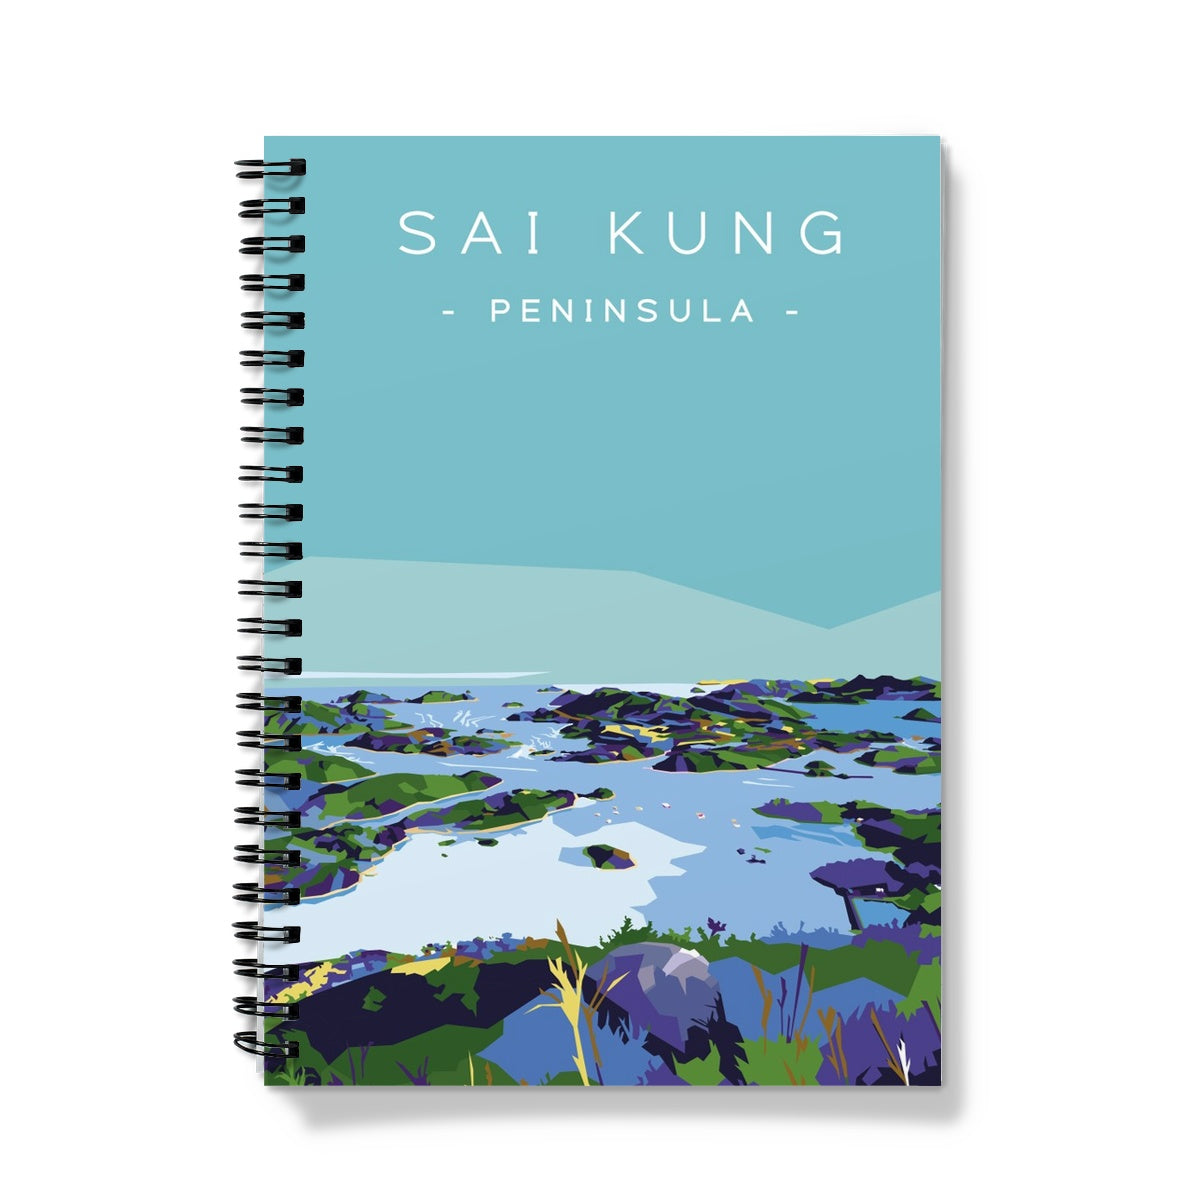 Hong Kong Travel - Sai Kung Peninsula Notebook